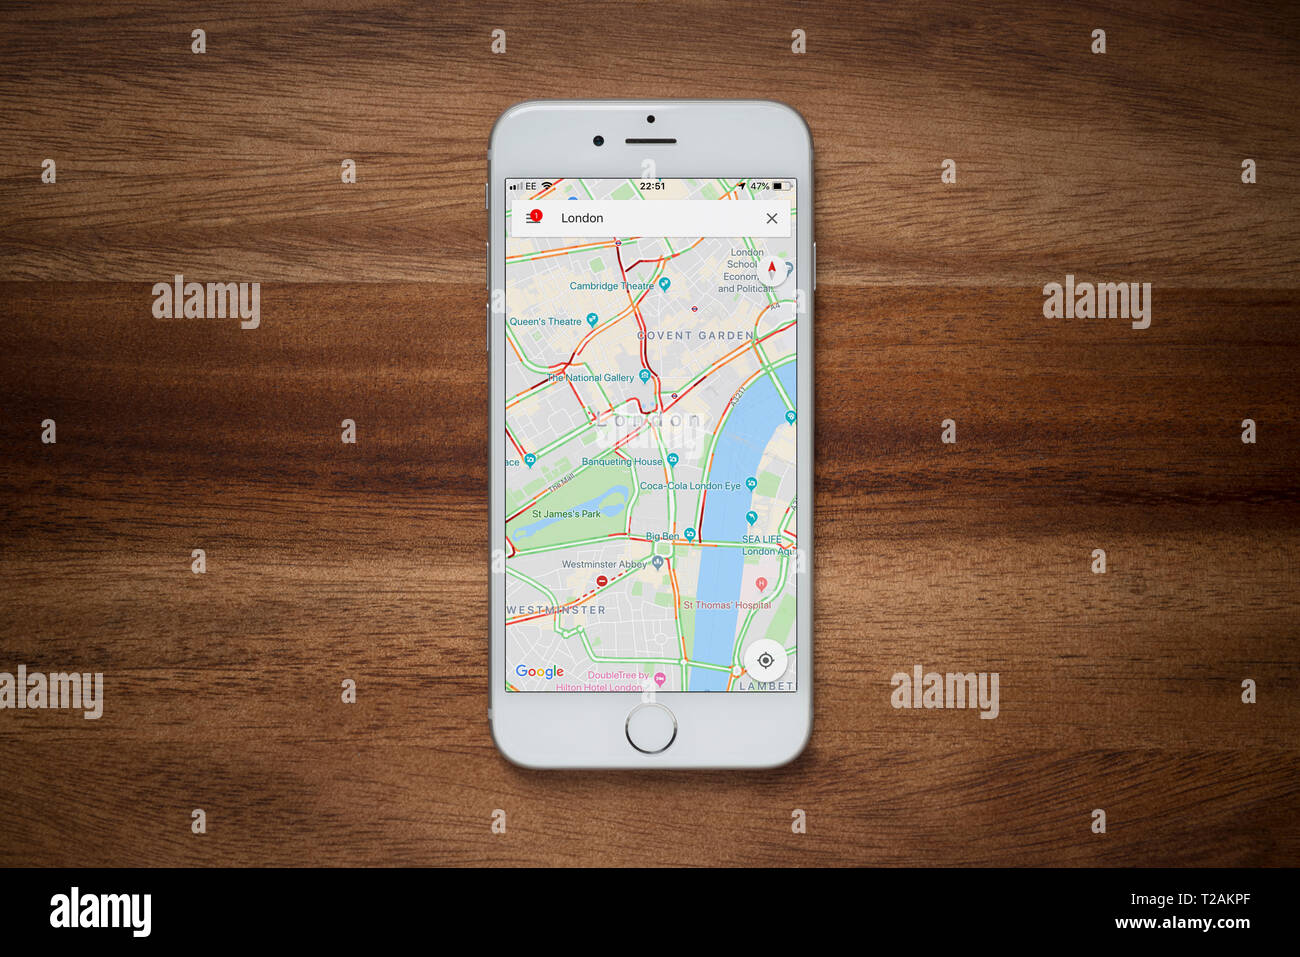 Un iPhone montrant le site Google Maps repose sur une table en bois brut (usage éditorial uniquement). Banque D'Images